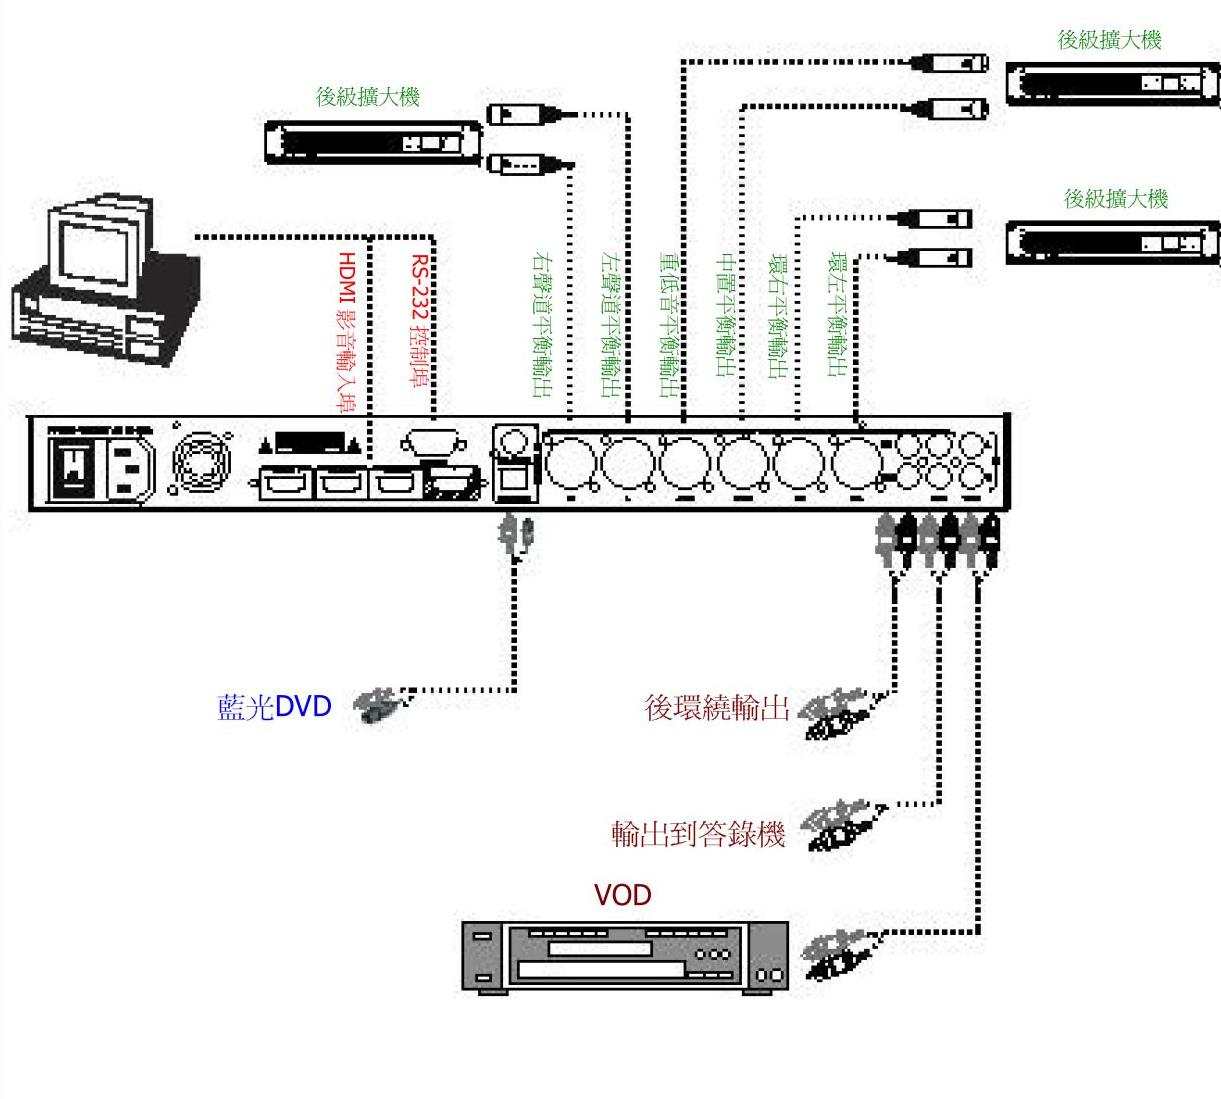 DSP-500, DSP-700 產品應用連接圖